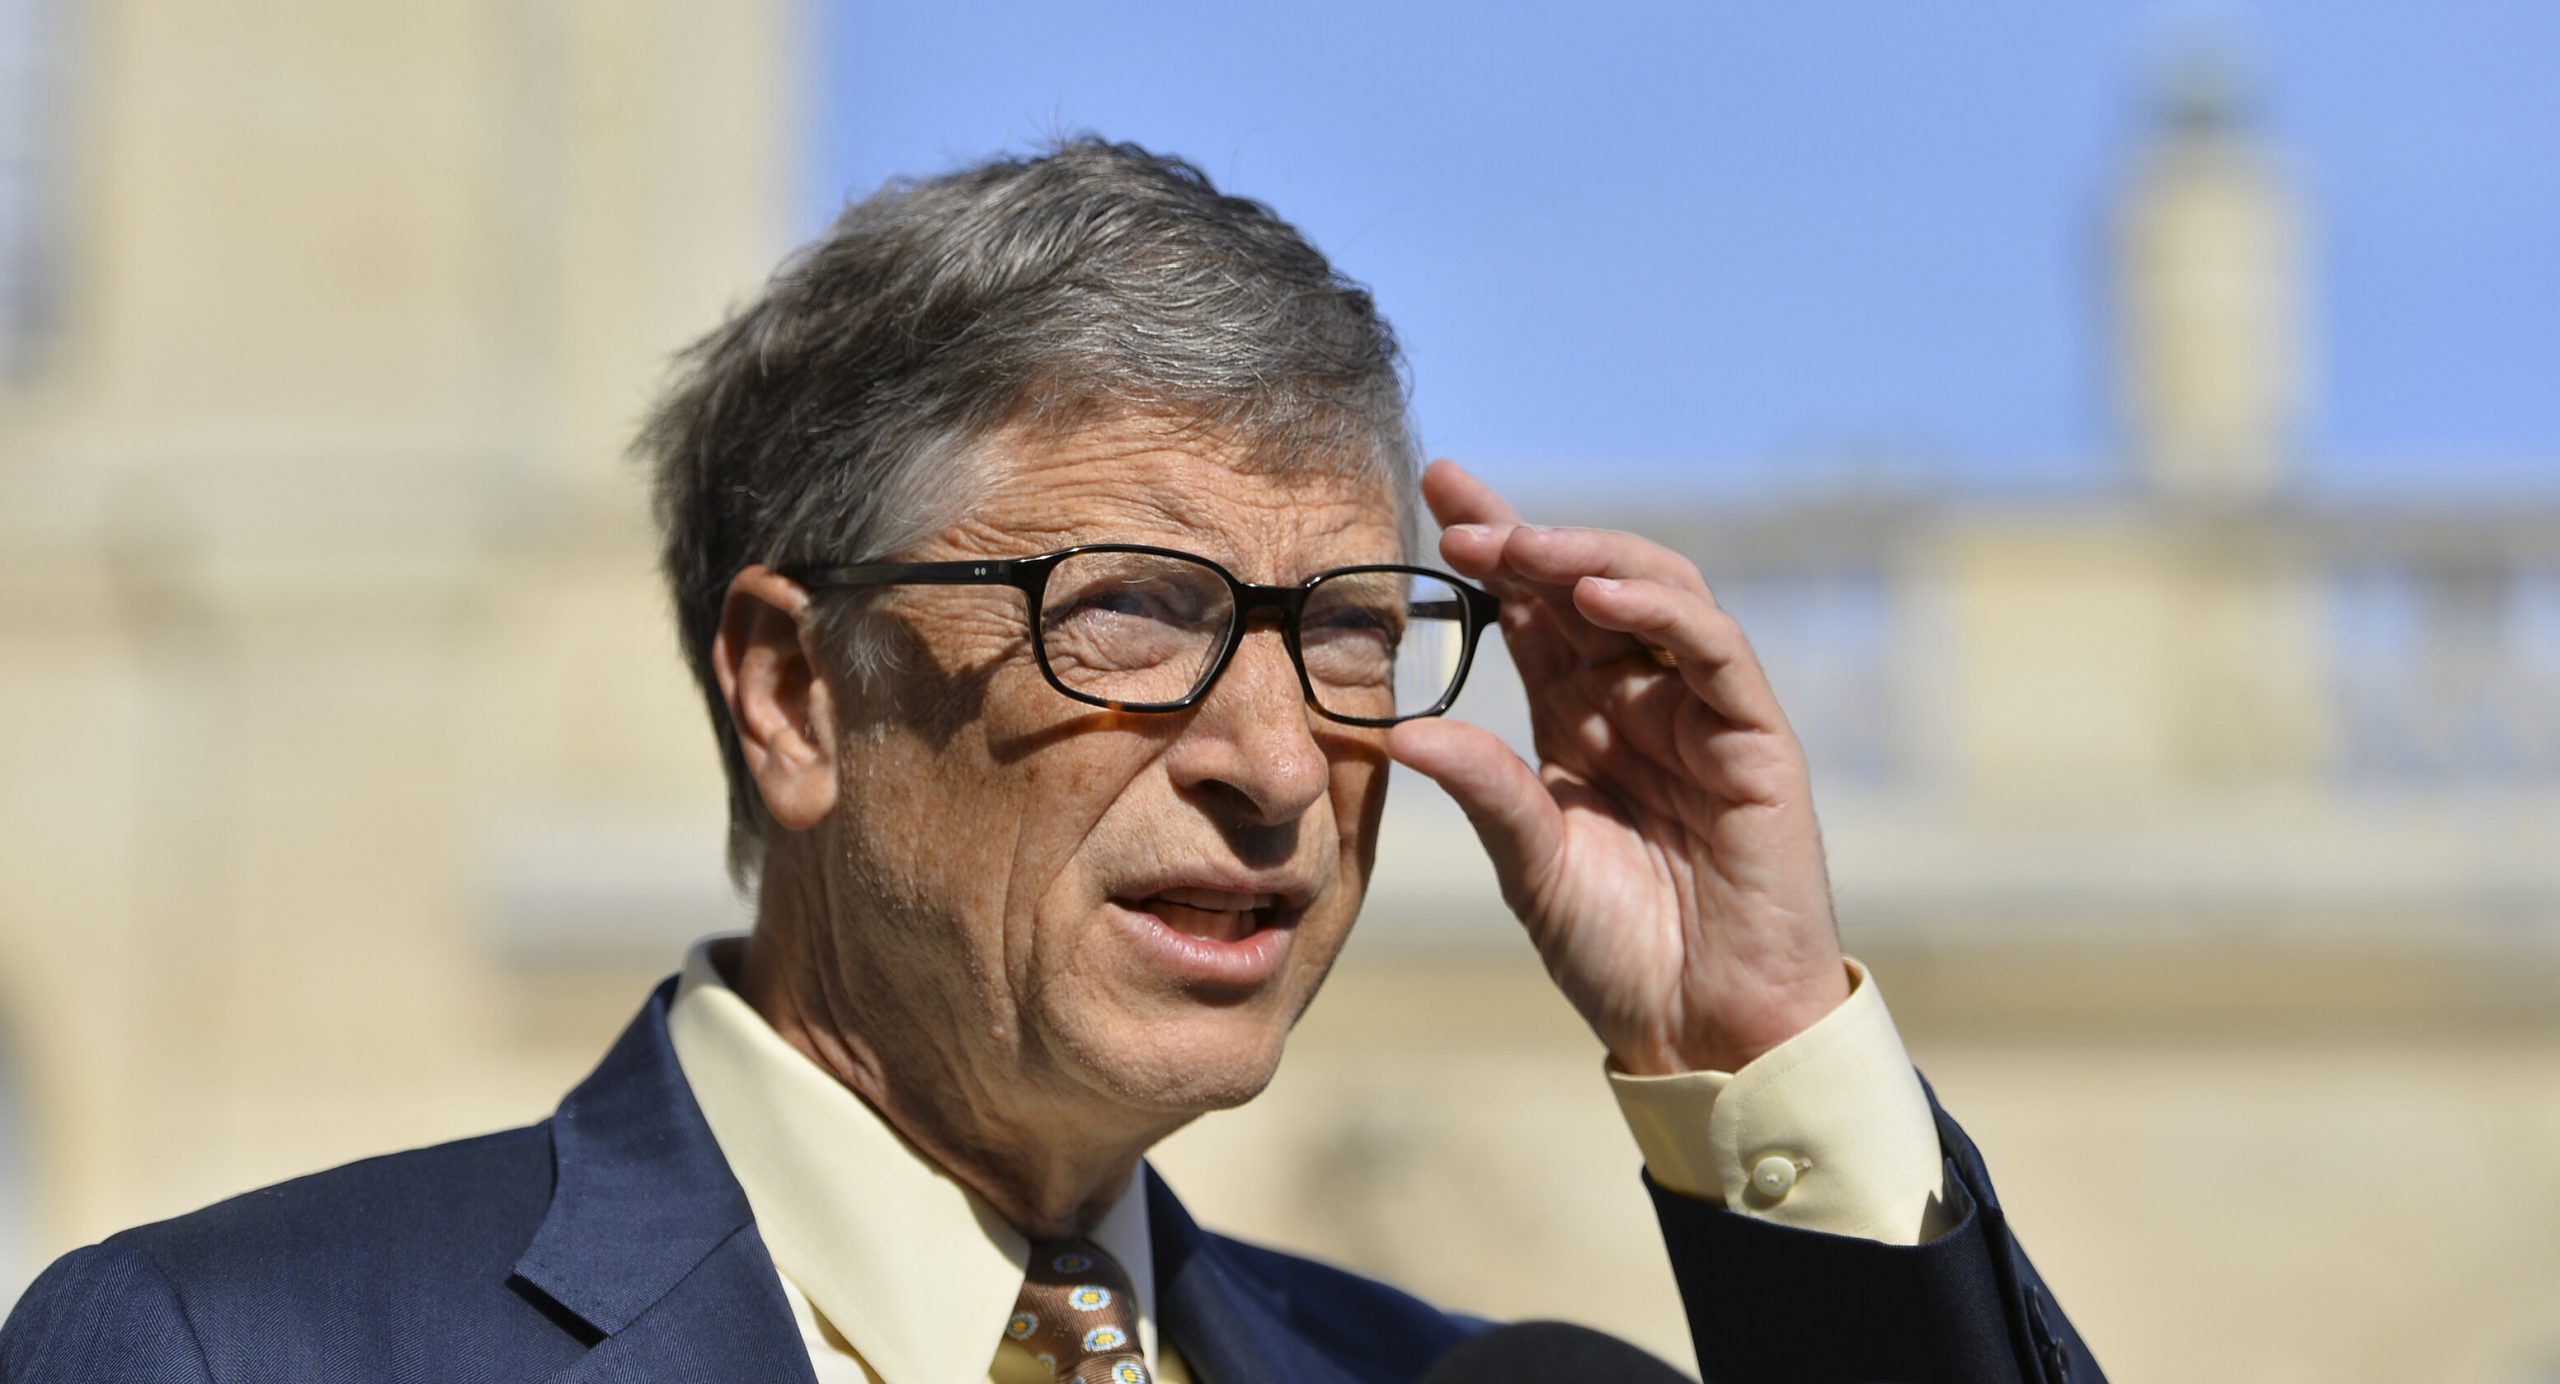 Bill Gates a fost forțat să se retragă de la conducerea Microsoft în urma unui scandal sexual. O angajată susține că au întreținut relații intime vreme de câțiva ani